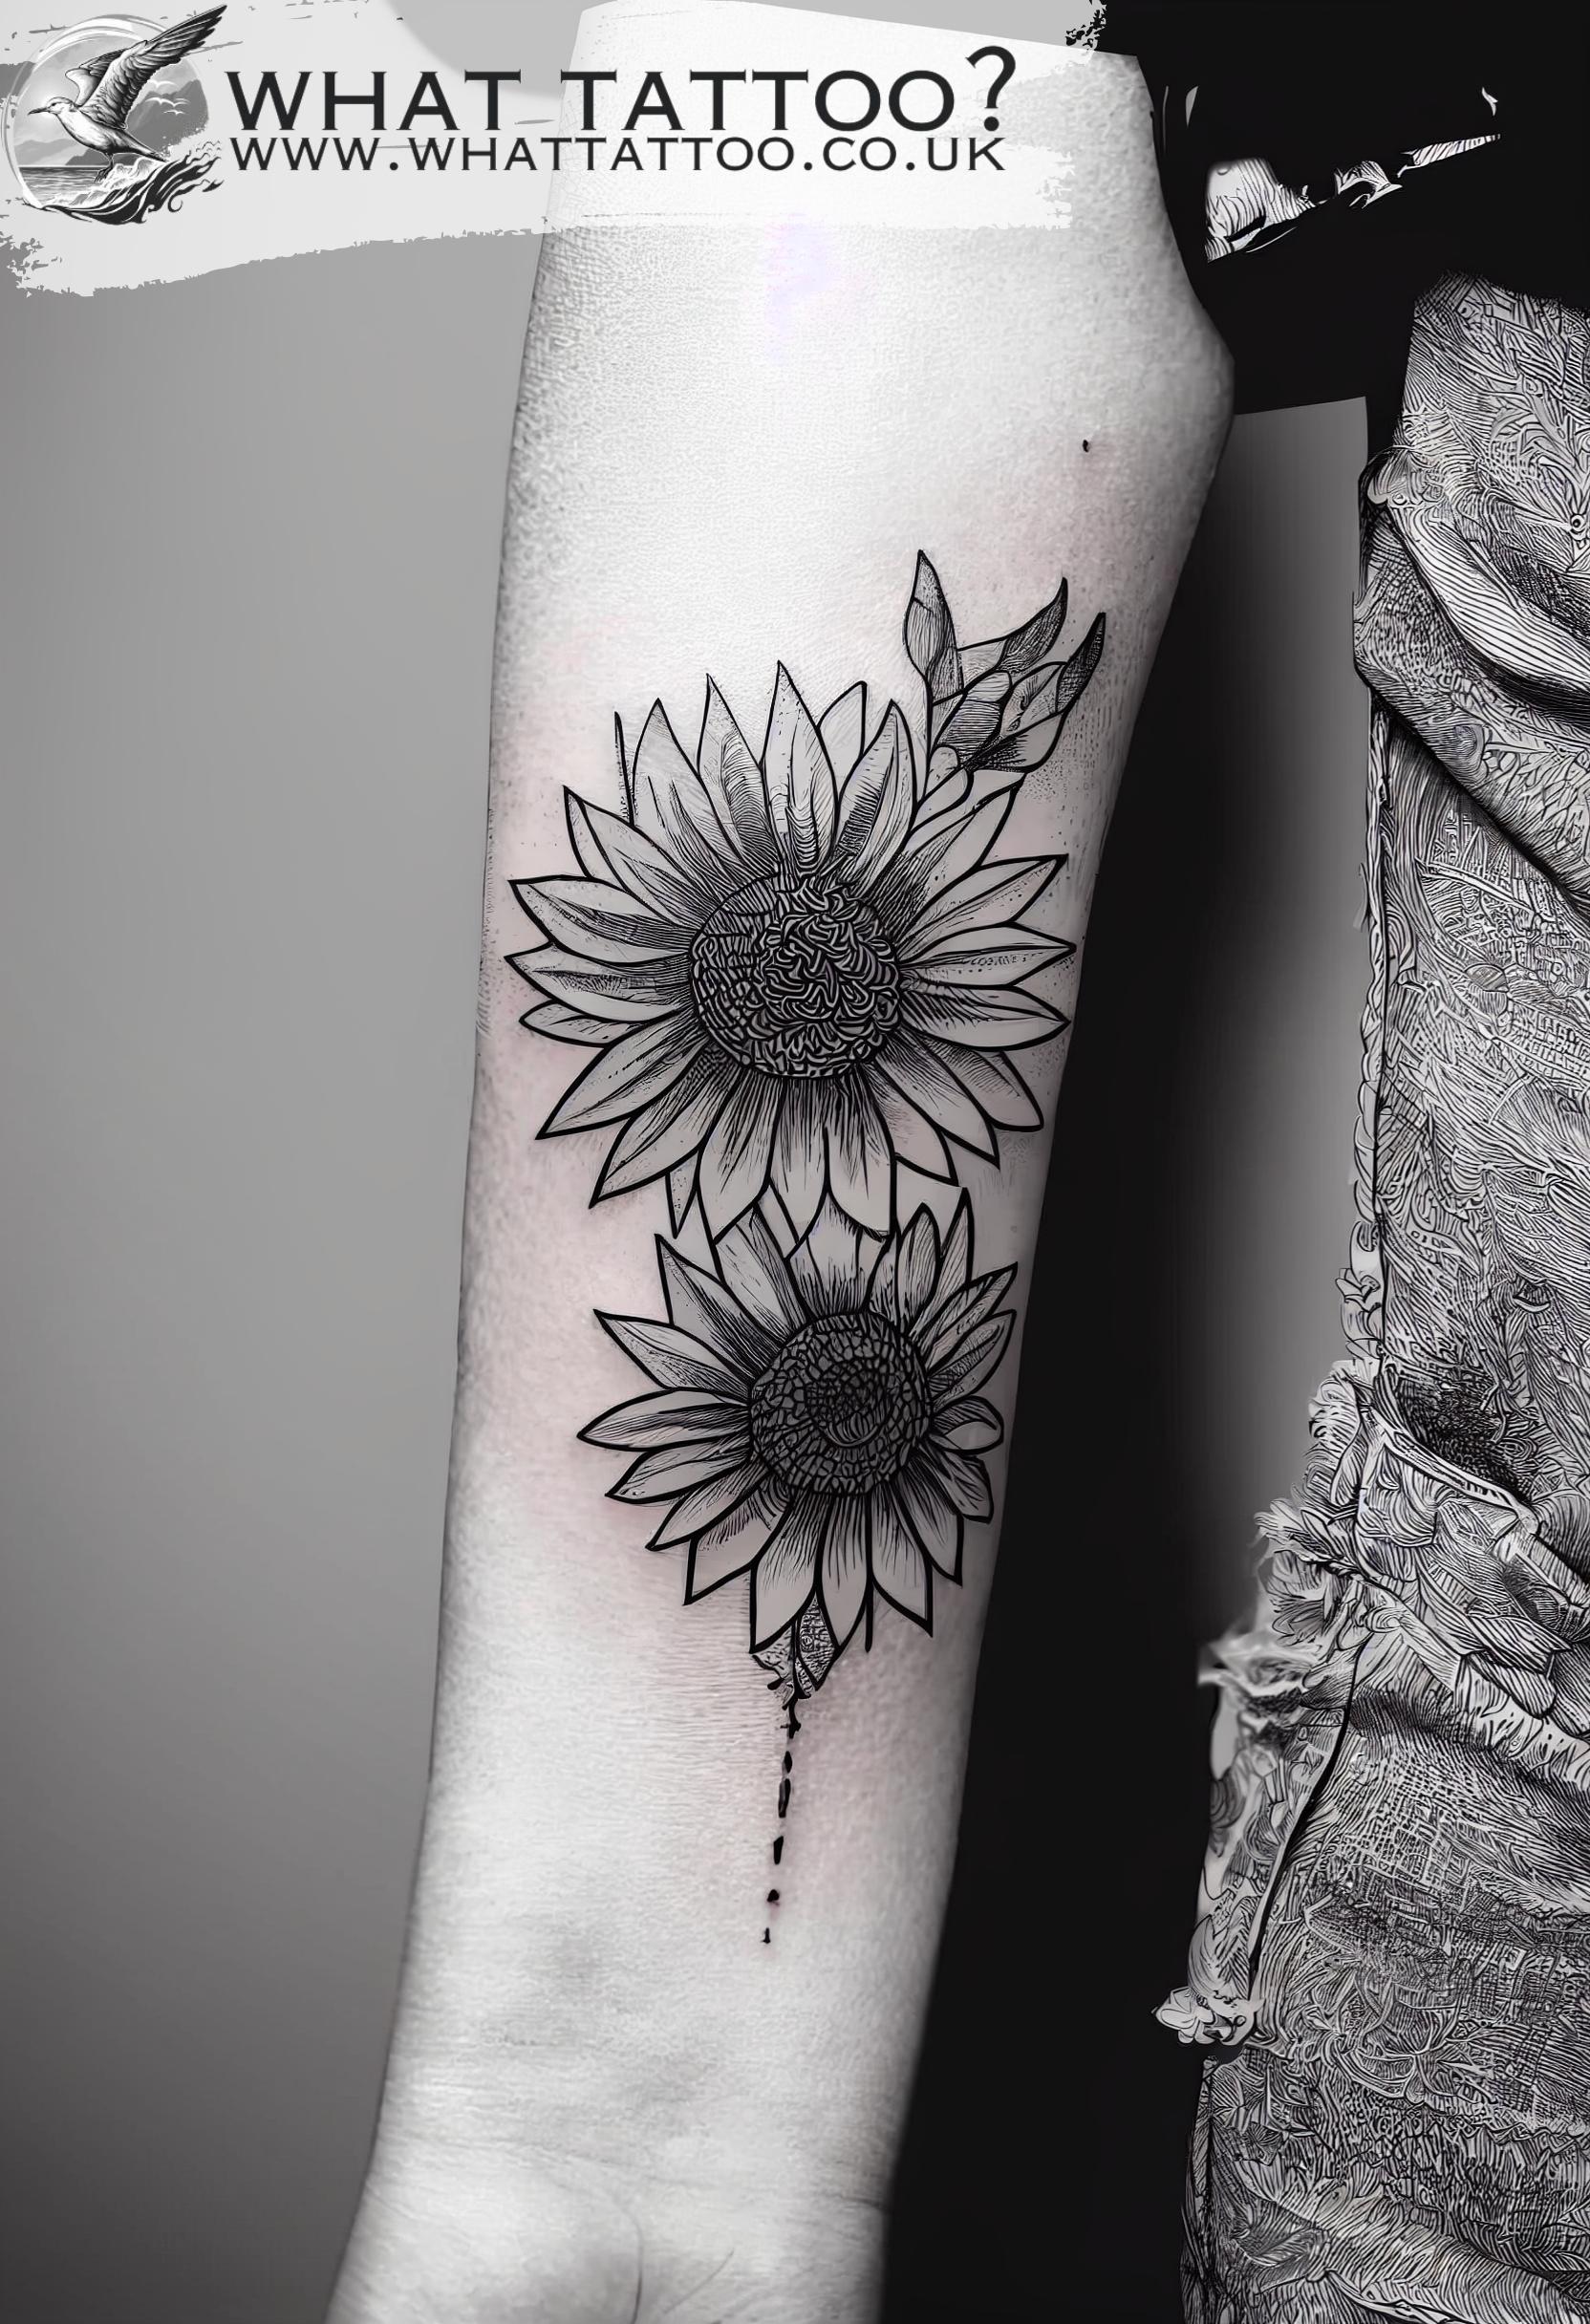 Sunflower tattoo design by EJ04191996 on DeviantArt